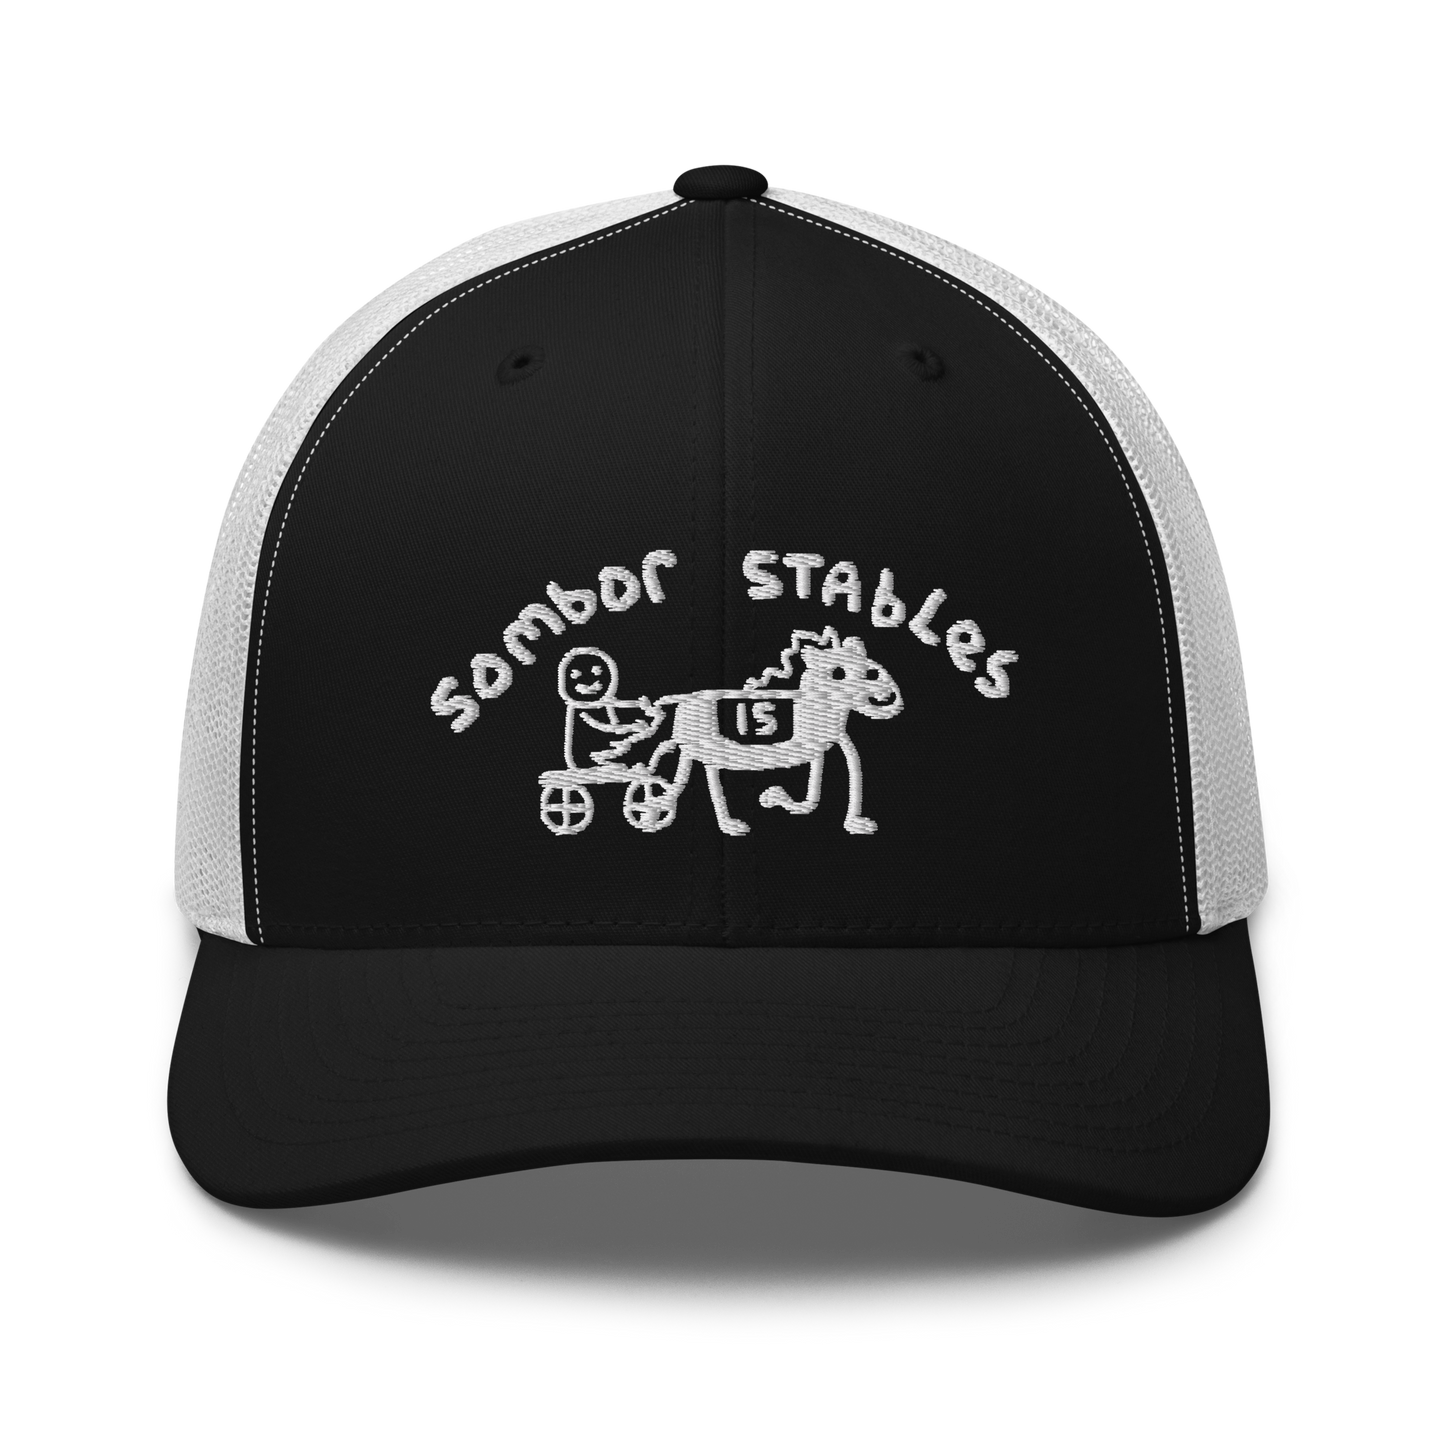 Sombor Stables Trucker Hat